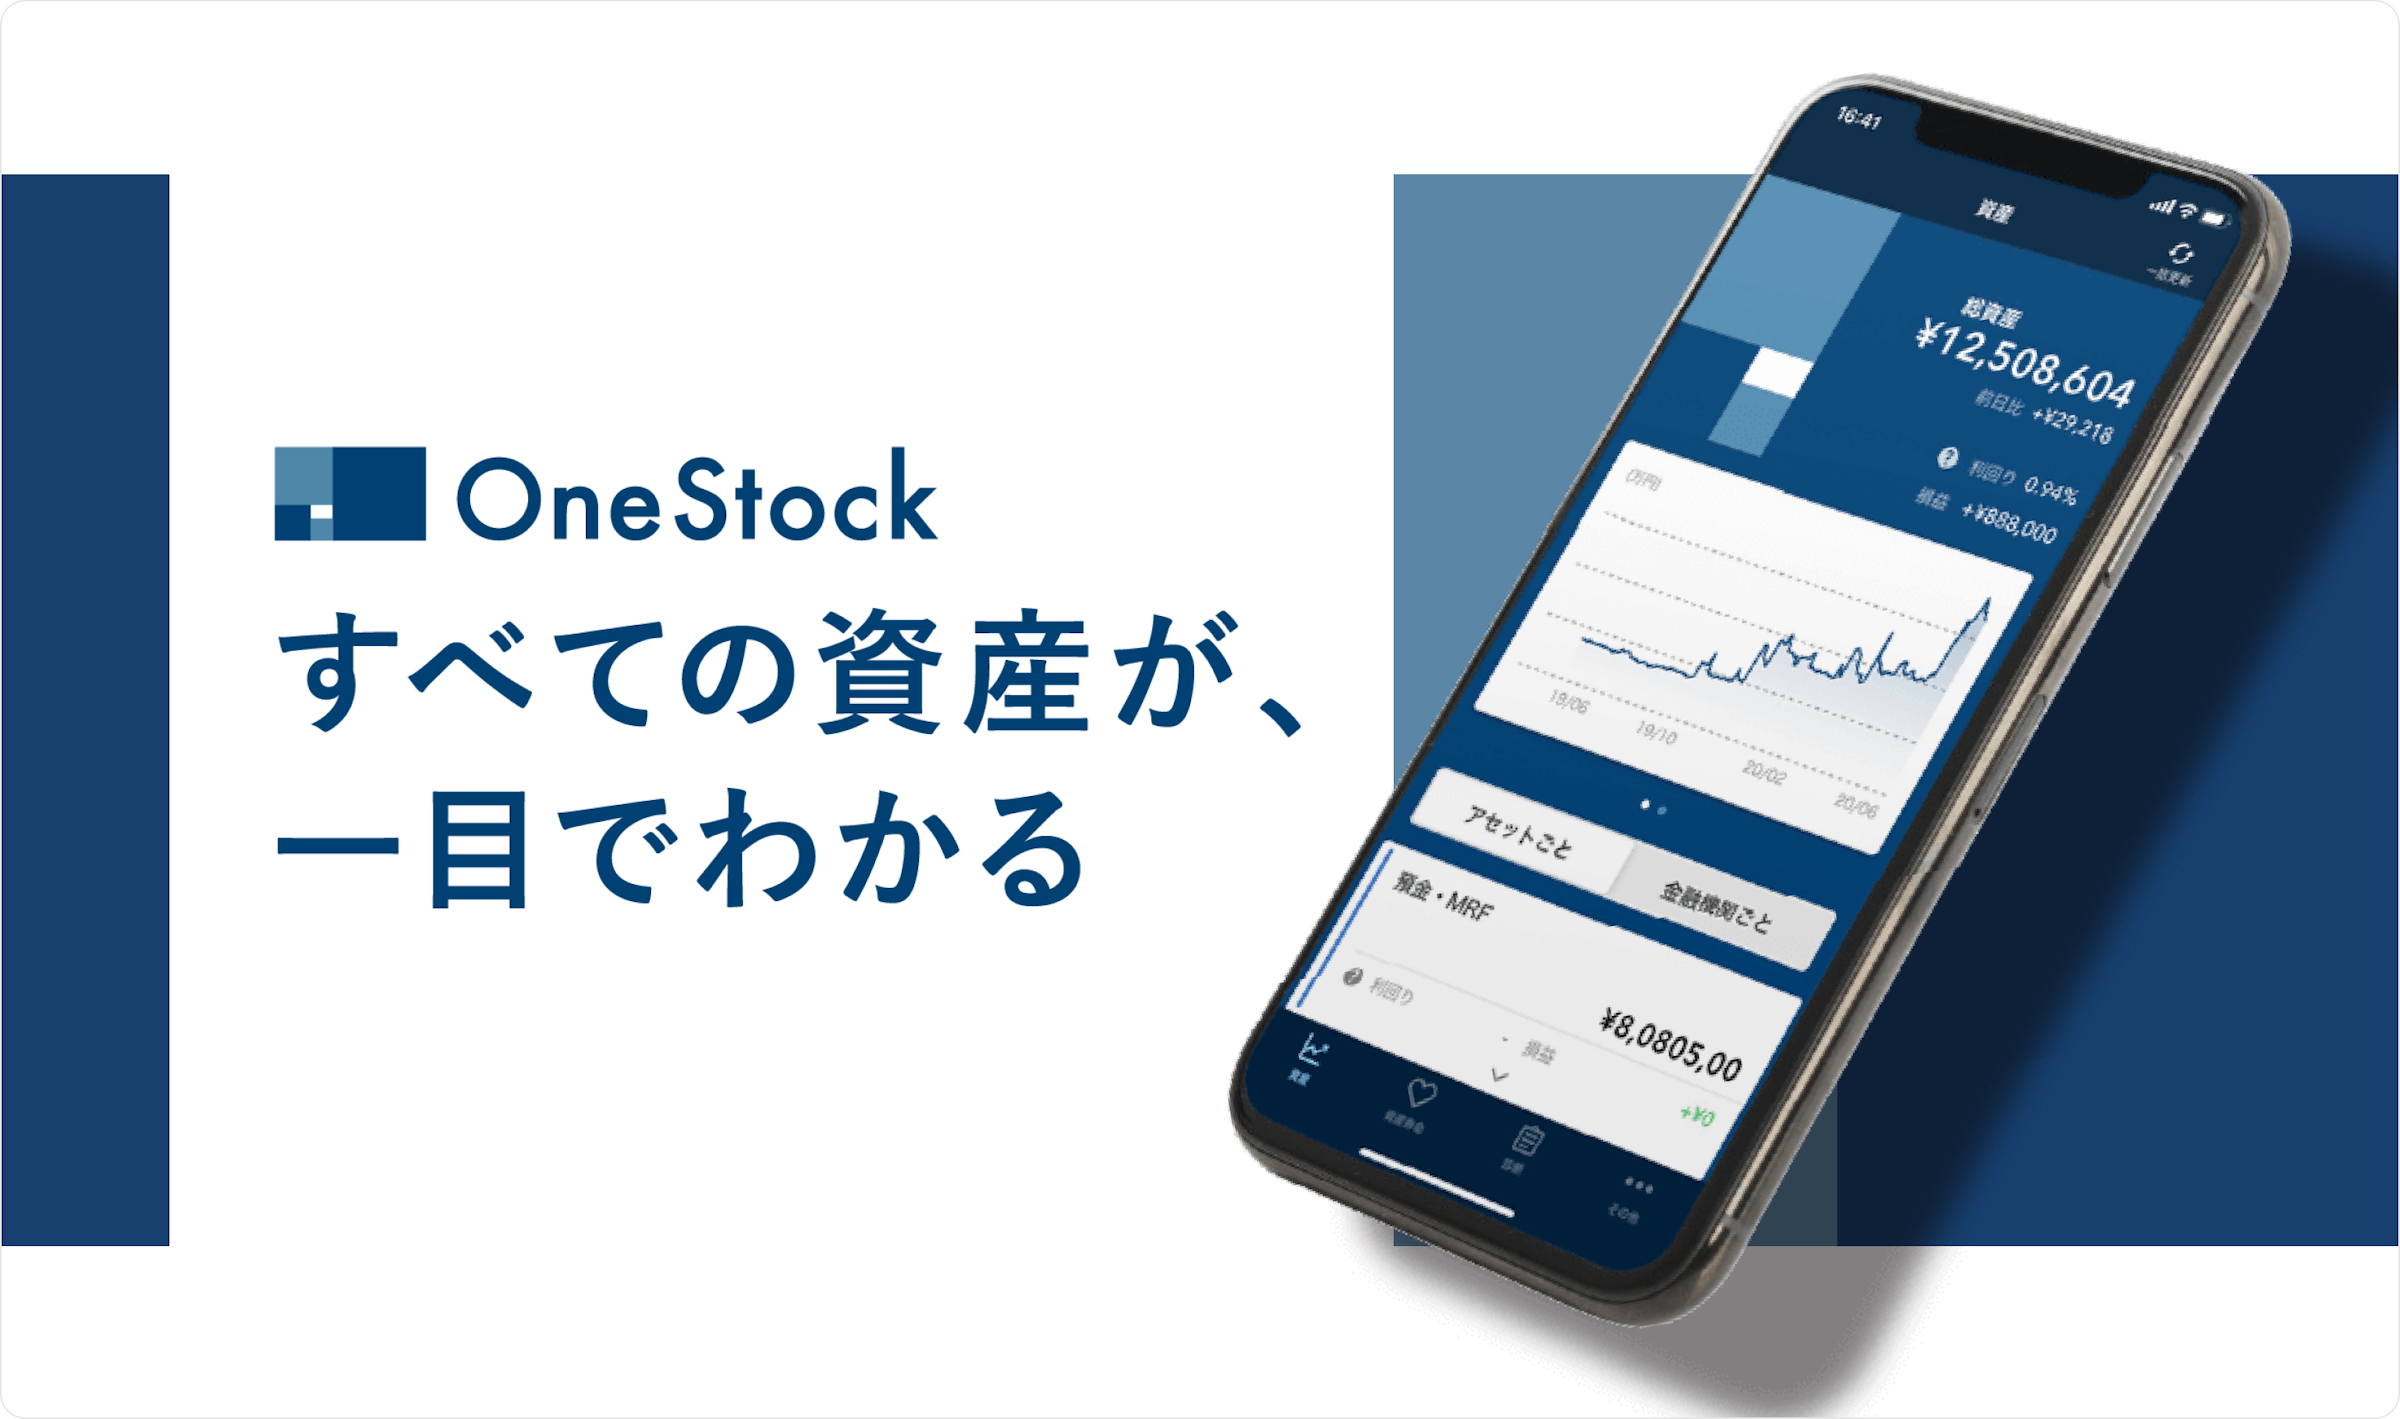 「OneStock すべての資産が、一目でわかる」という文字が左側に、右側にはスマートフォン画面が表示されている画像。